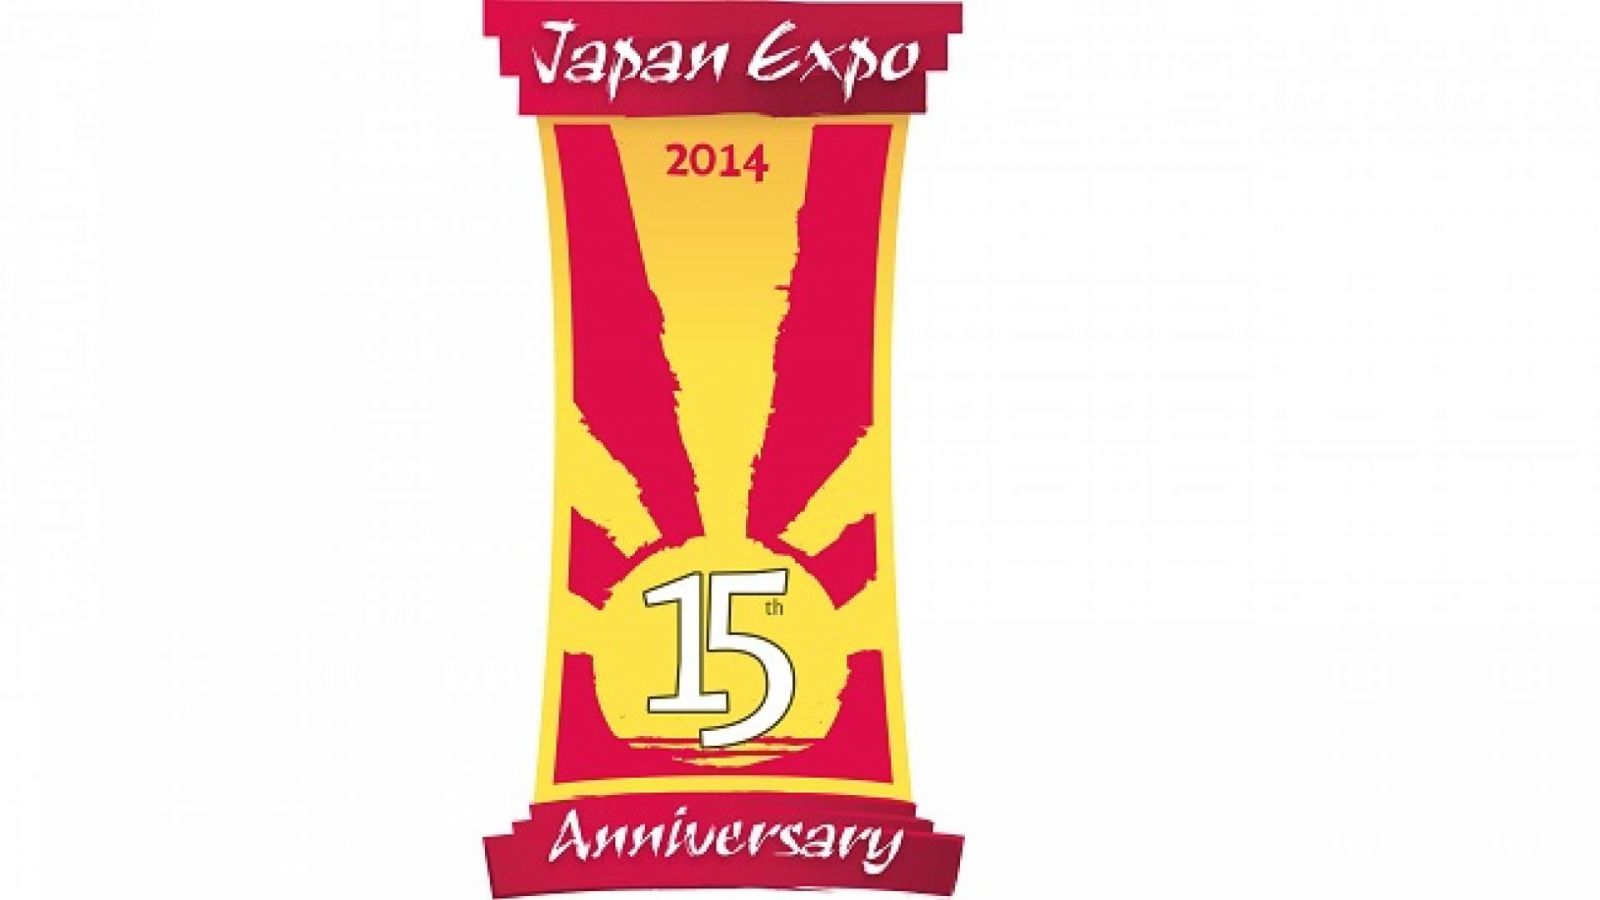 Soirée spéciale artistes de Japan Expo sur Nolife © Japan Expo